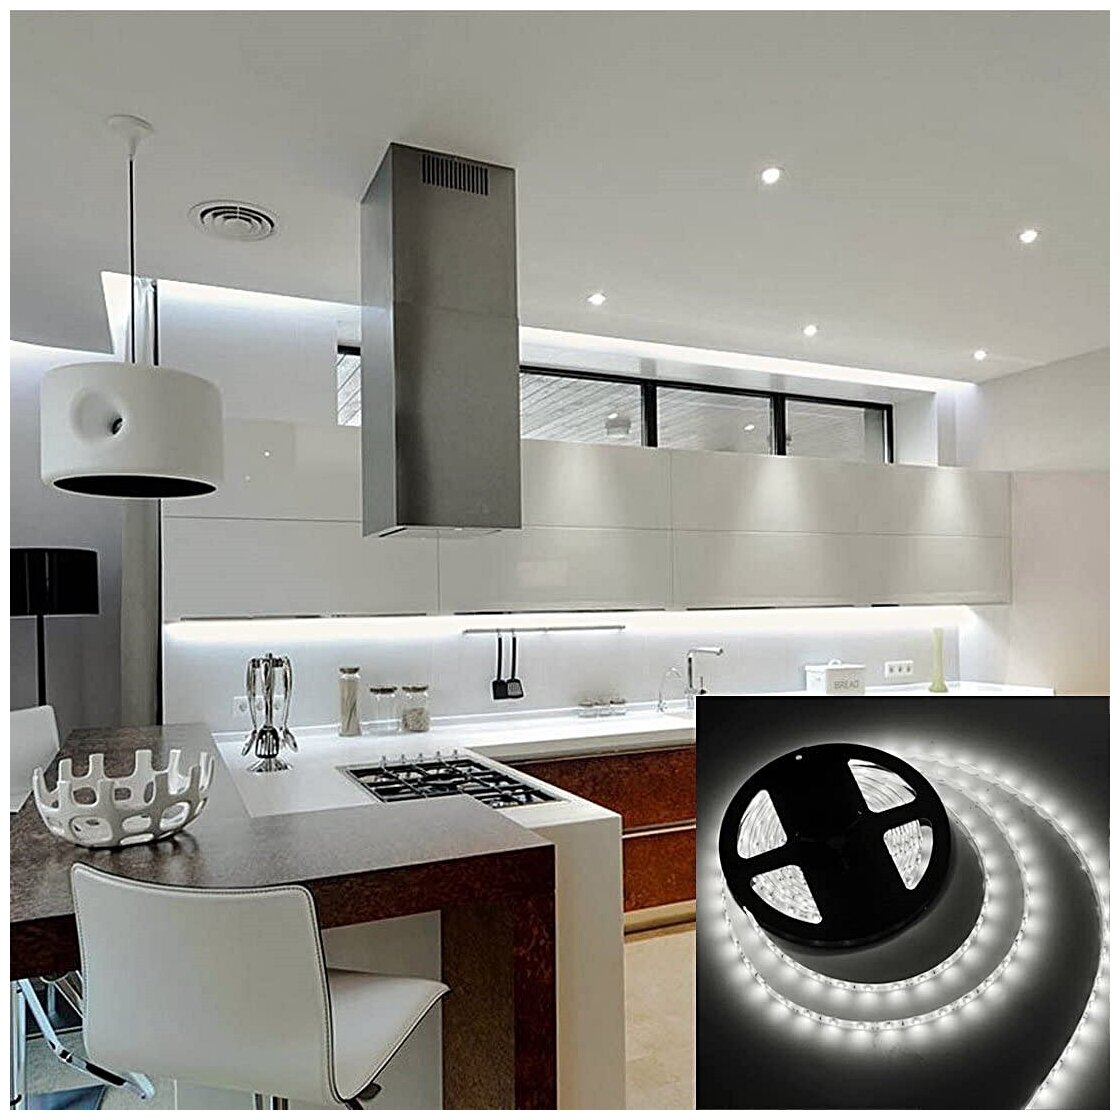 Светодиодная лента LED влагостойкая для кухни спальни гостиной прихожей SMD 3528 5м 12V IP65 (Белая)